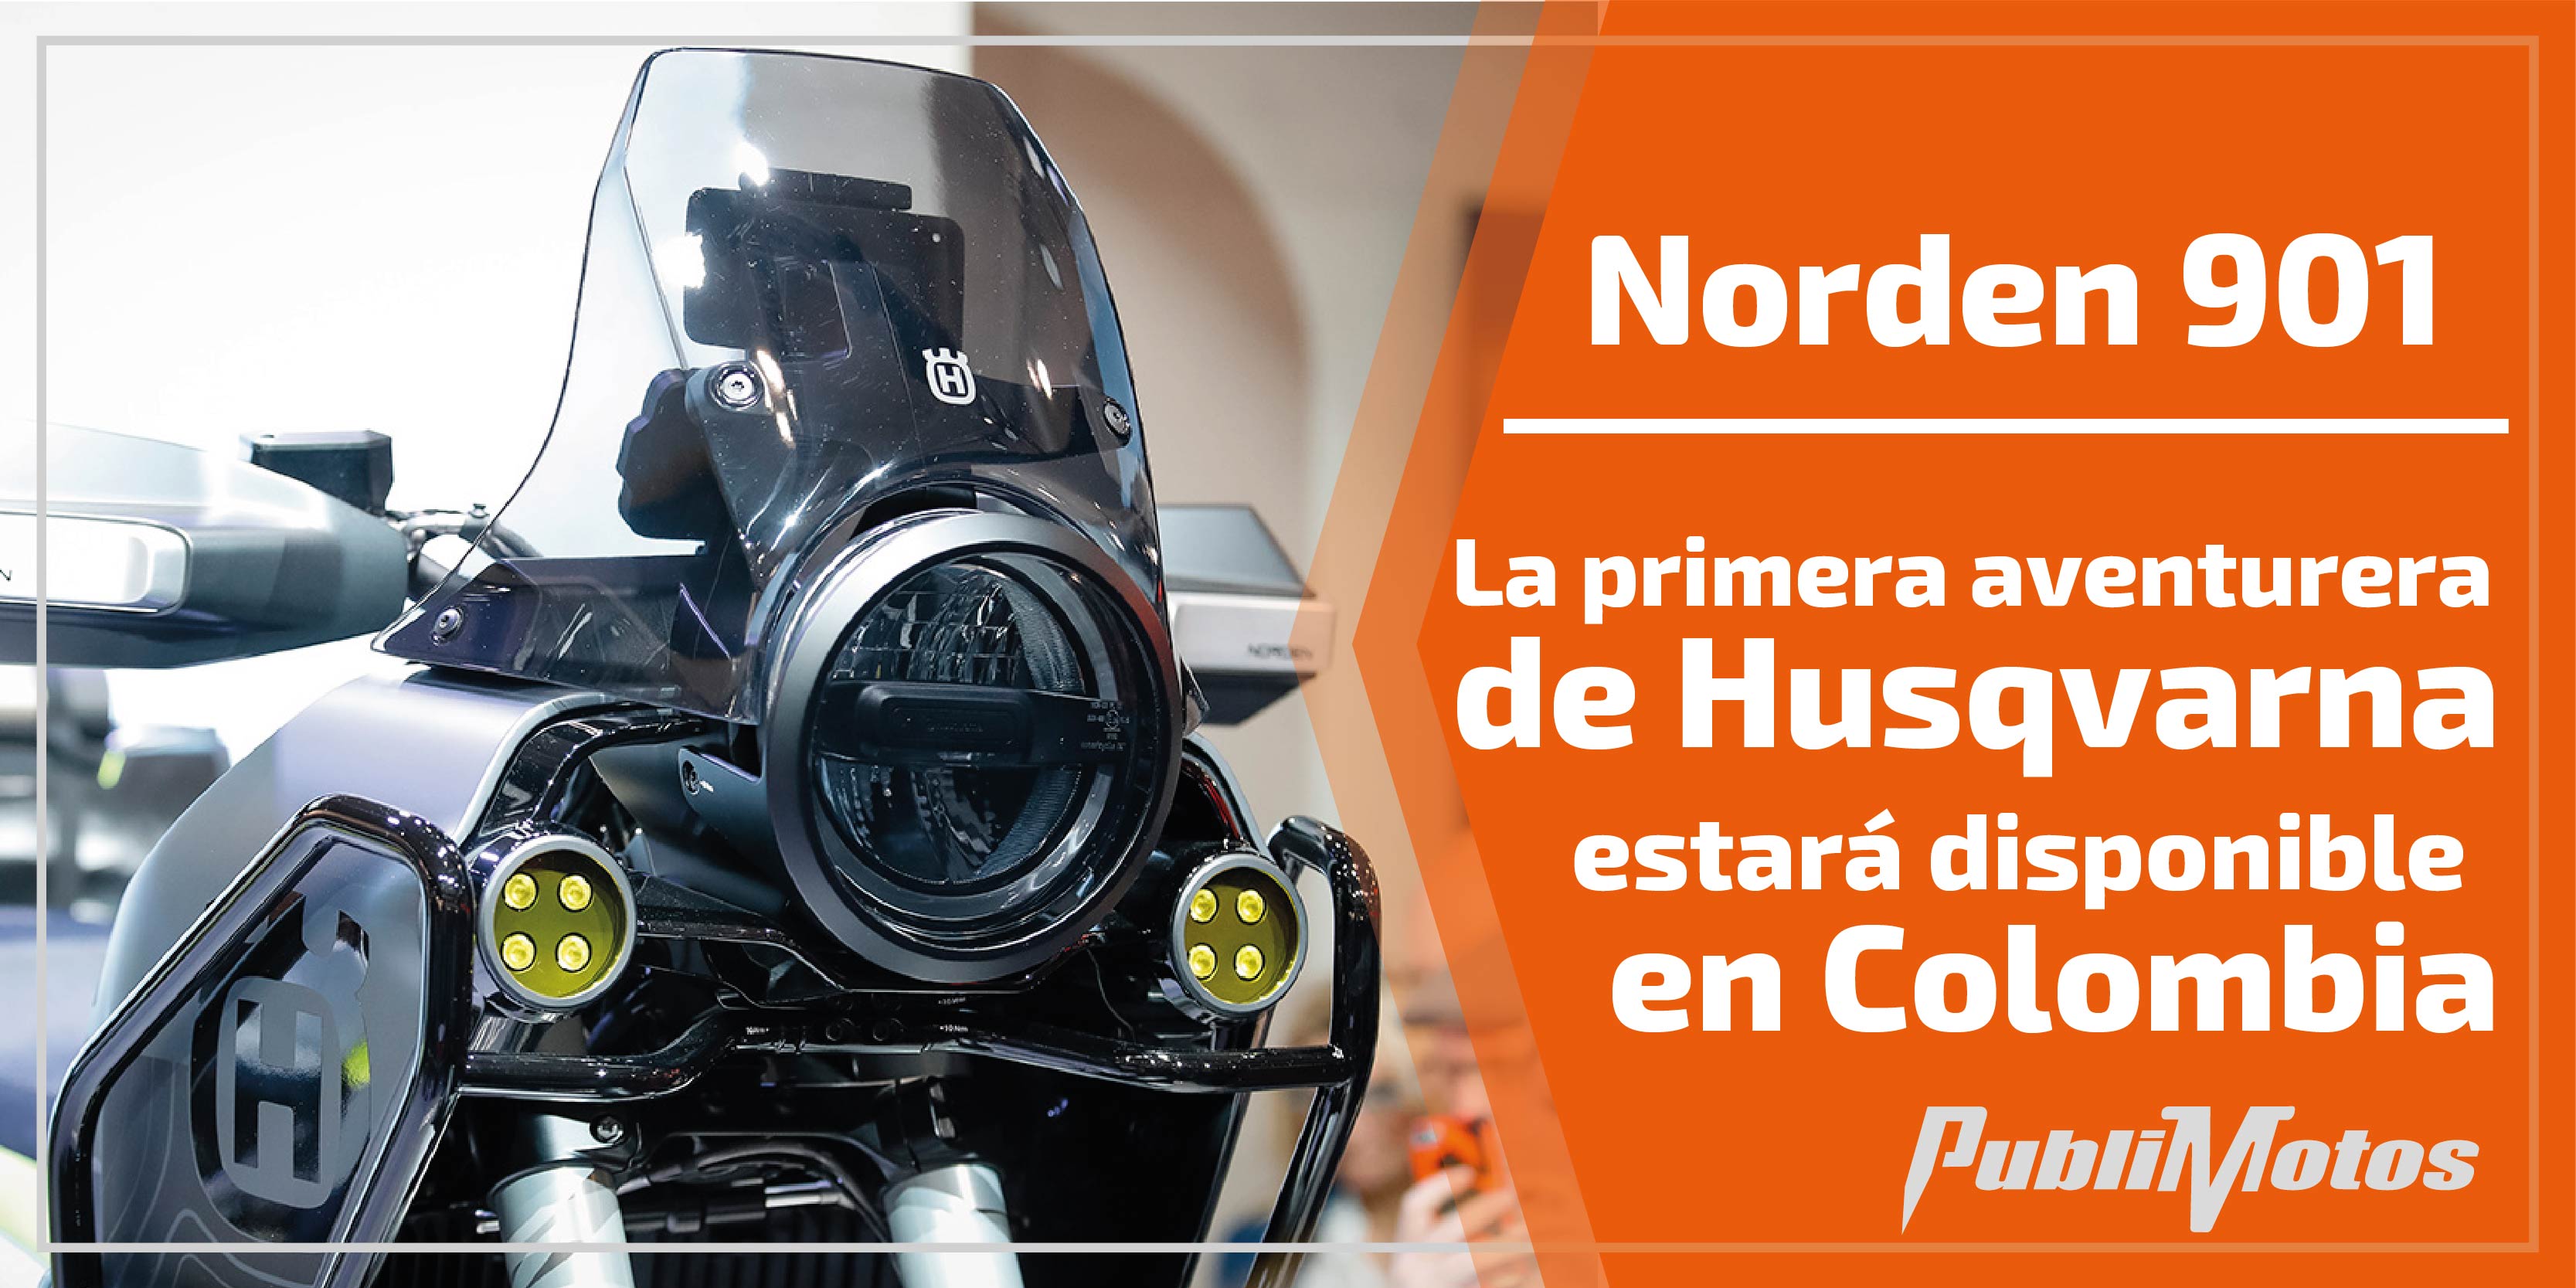 Norden 901| La primera aventurera de Husqvarna estará disponible en Colombia